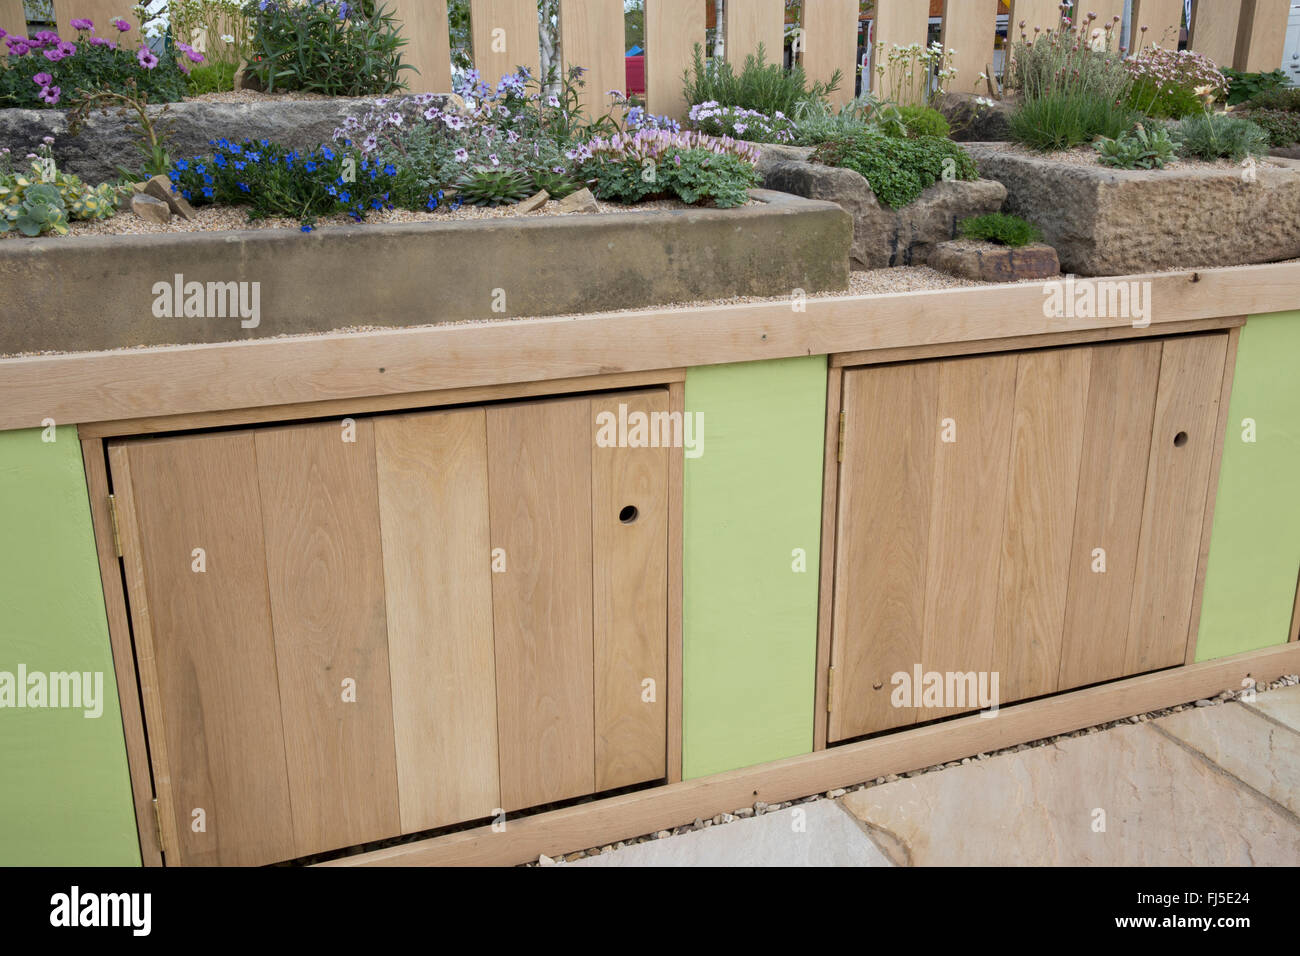 Terrasse mit einem Steingarten mit alpinen Pflanzen Pflanze in Steinbehältern Container Trog Bank mit Aufbewahrungsschränken - Frühling UK Stockfoto